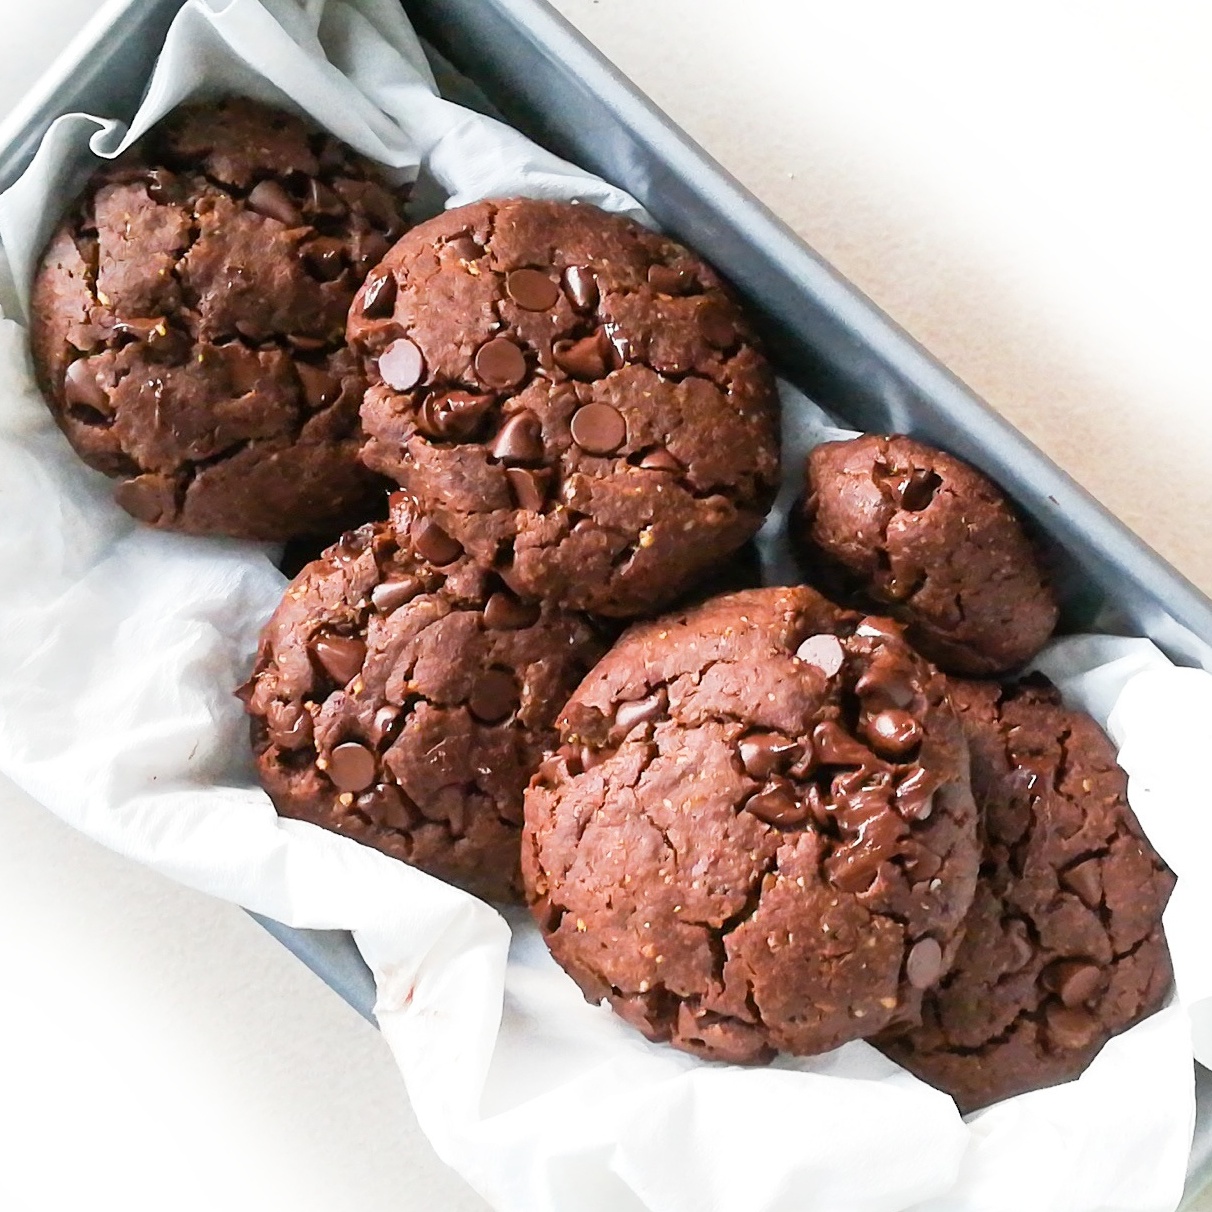 Des cookies tout chocolat, au beurre de cacahuète et à la fleur de sel, healthy et vegan